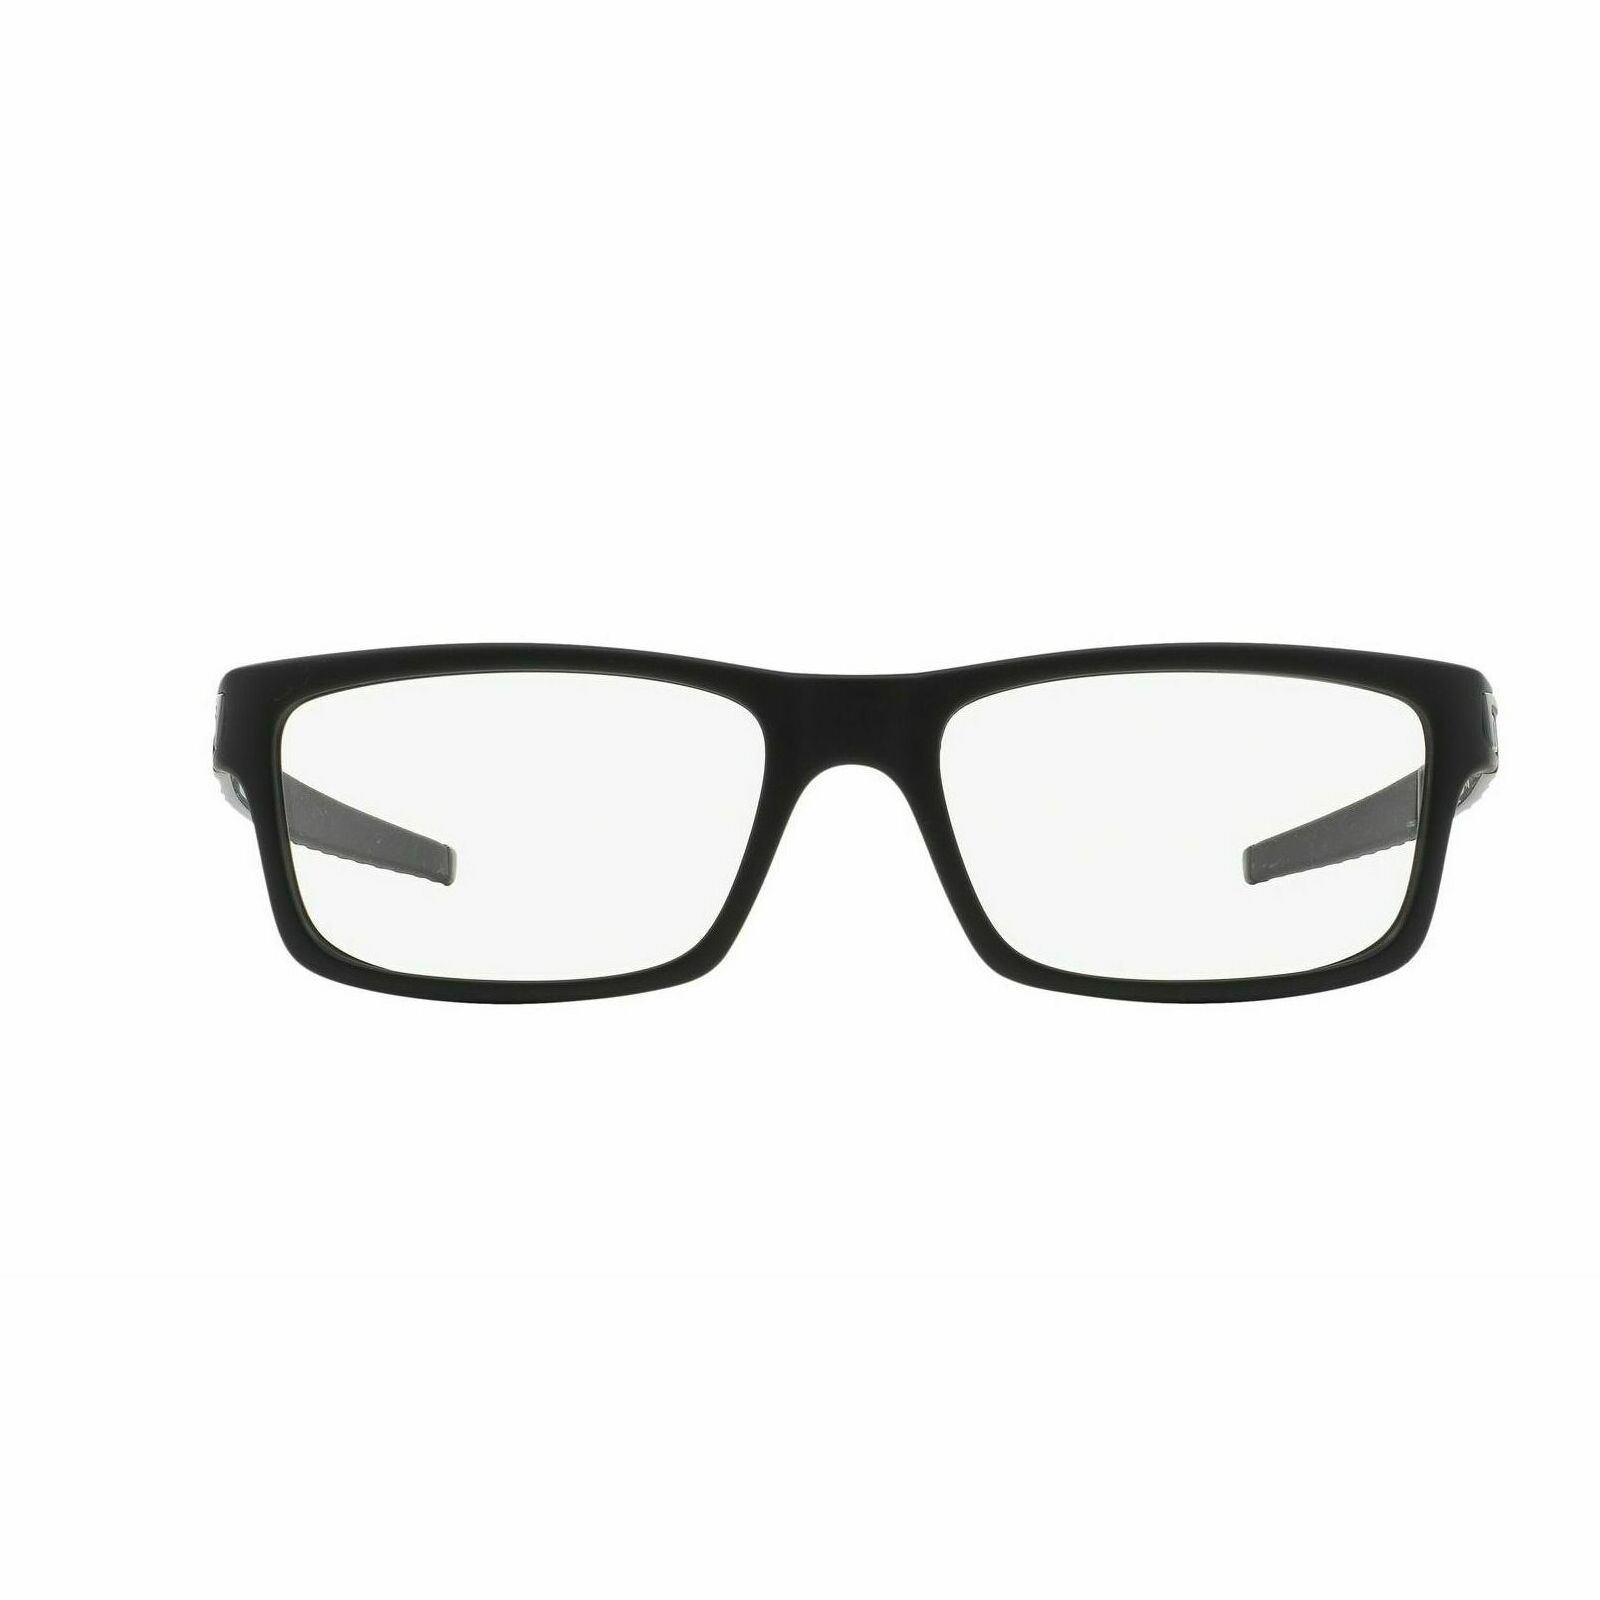 OX8026 Rectangle Eyeglasses 1 - size  54